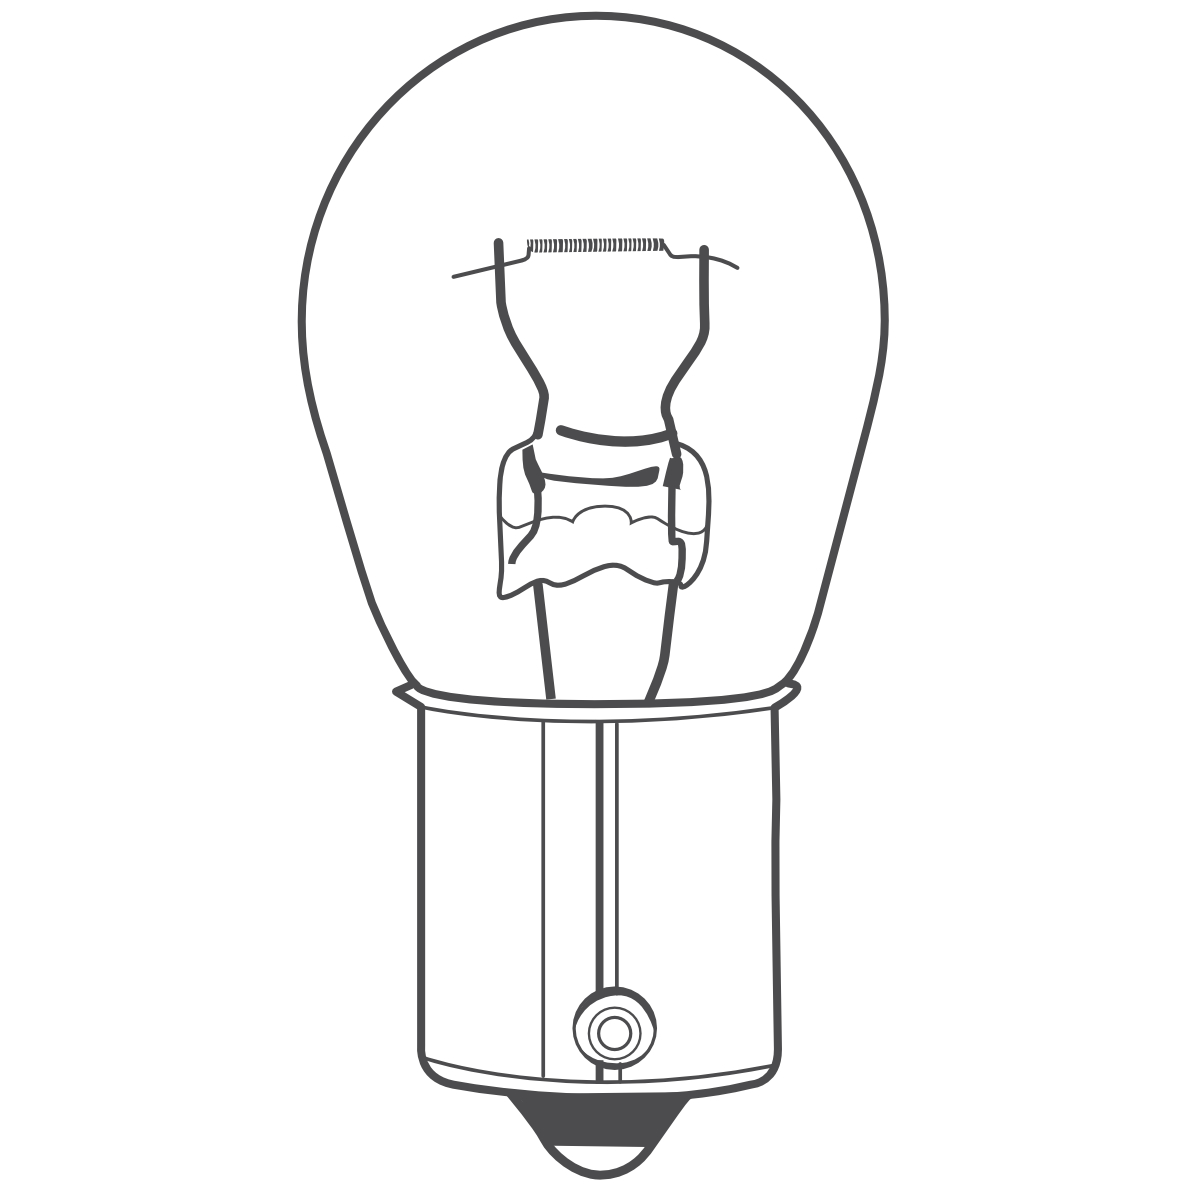 Auto-Lampen-Discount - H7 Lampen und mehr günstig kaufen - 10x BREHMA Standlicht  W5W Autolampen in Xenon Optik 12V 5W